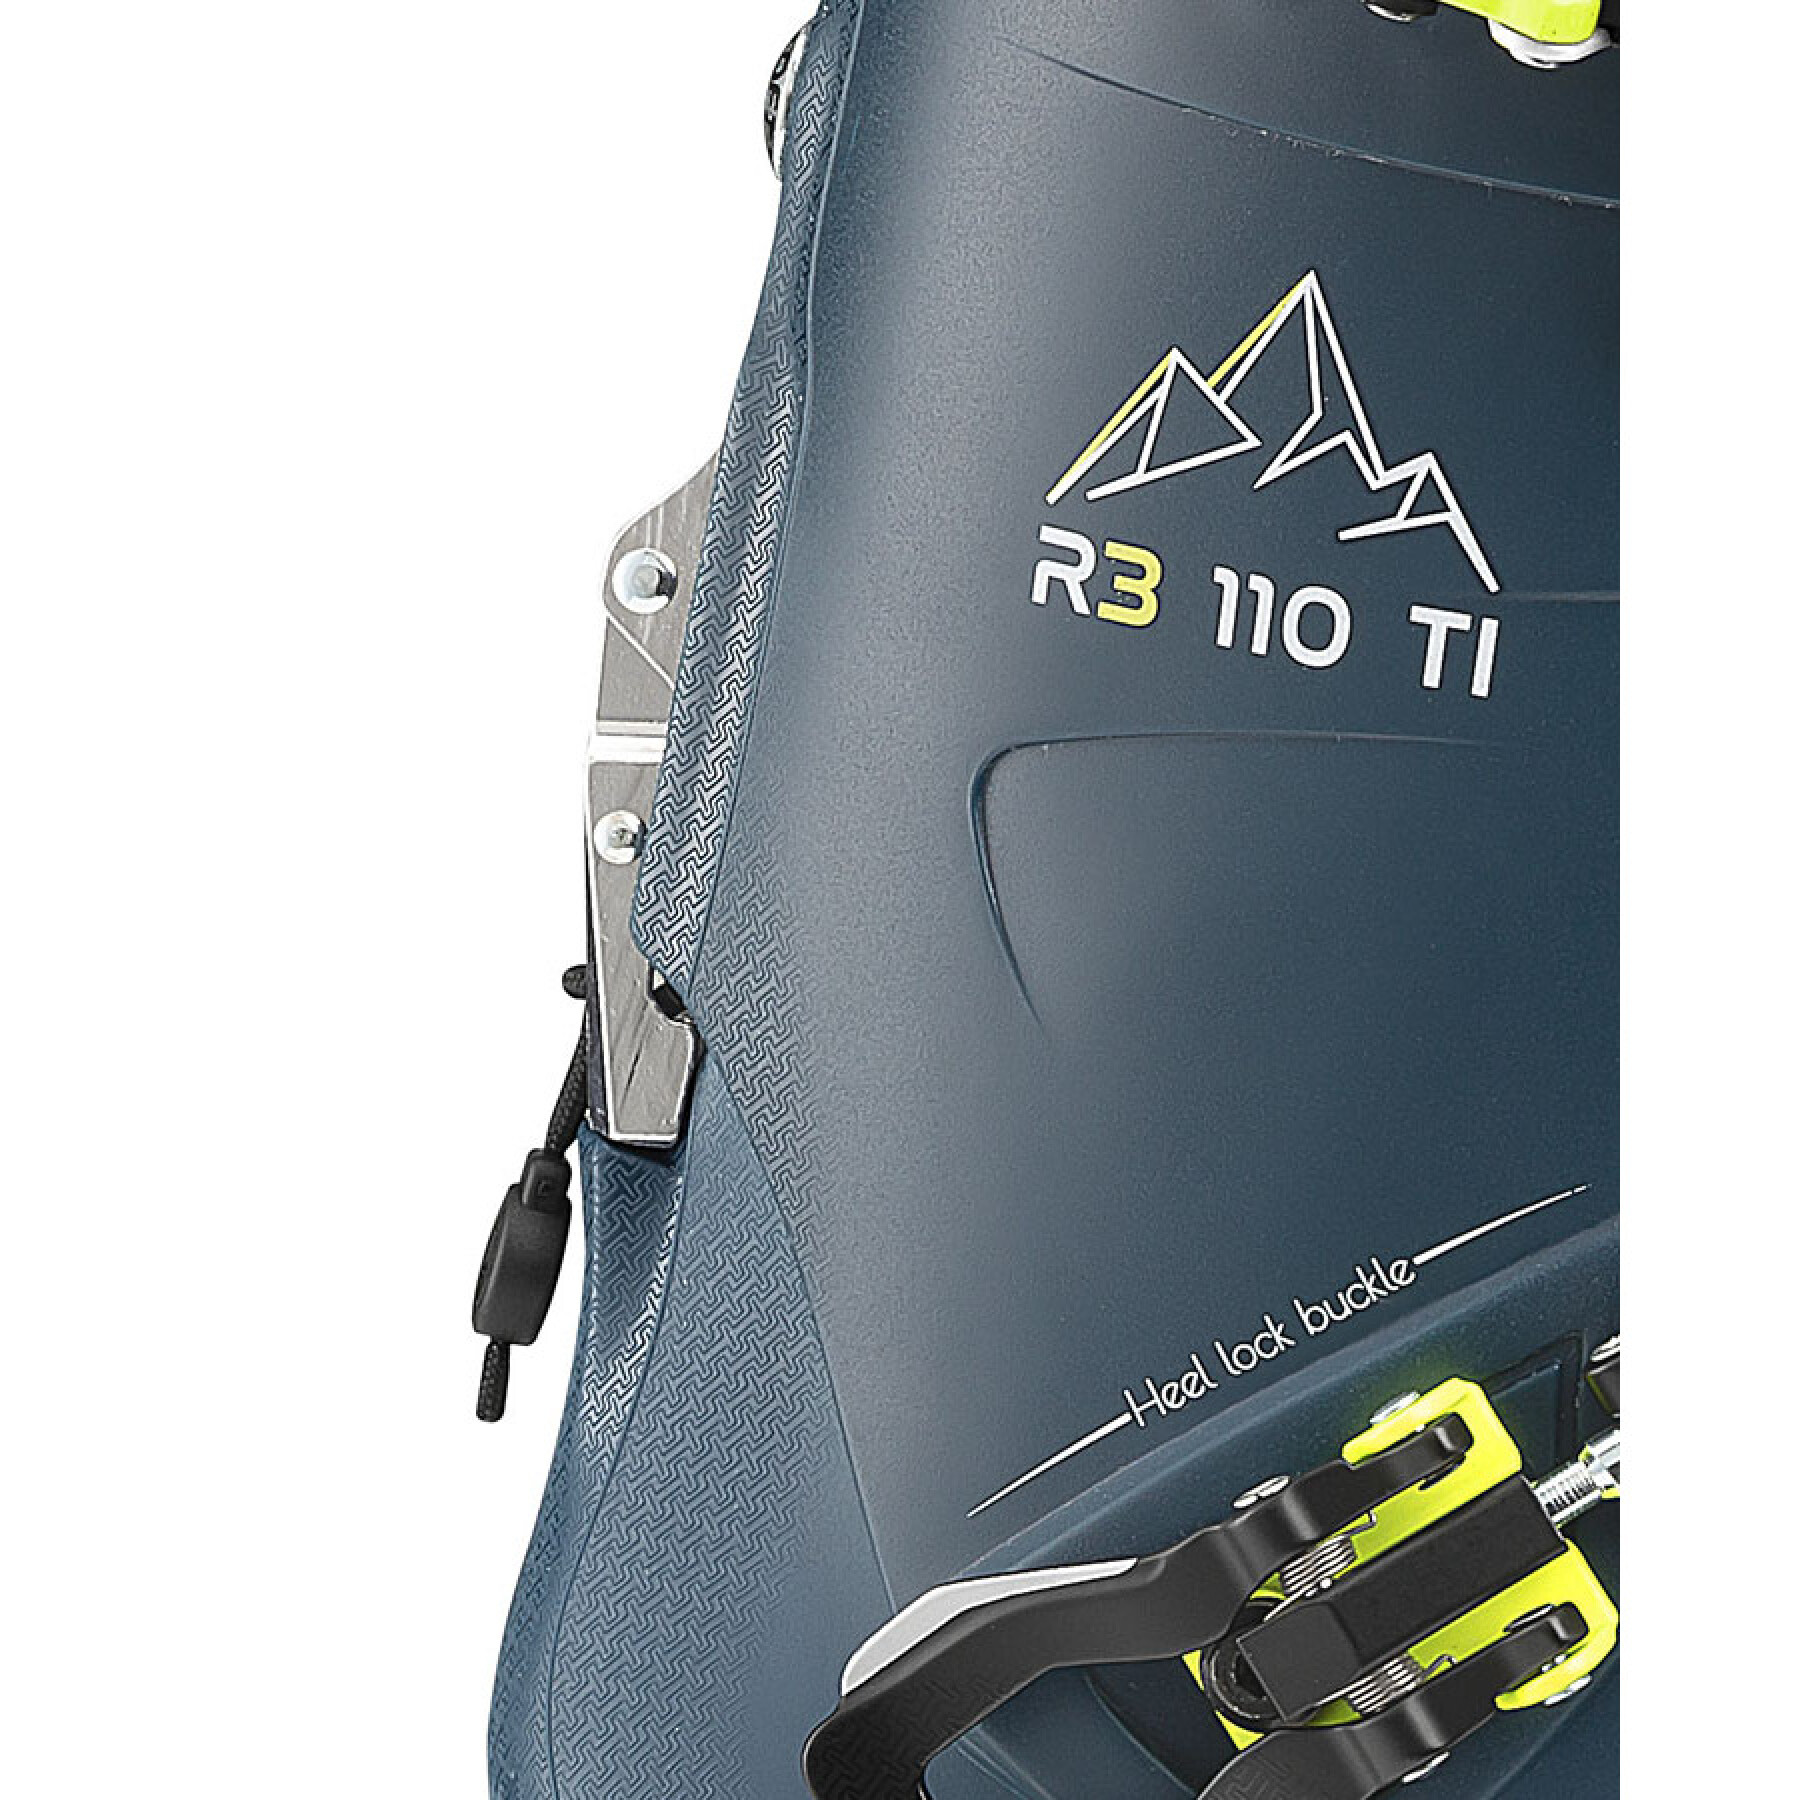 Botas de esqui Roxa R3 110 TI IR